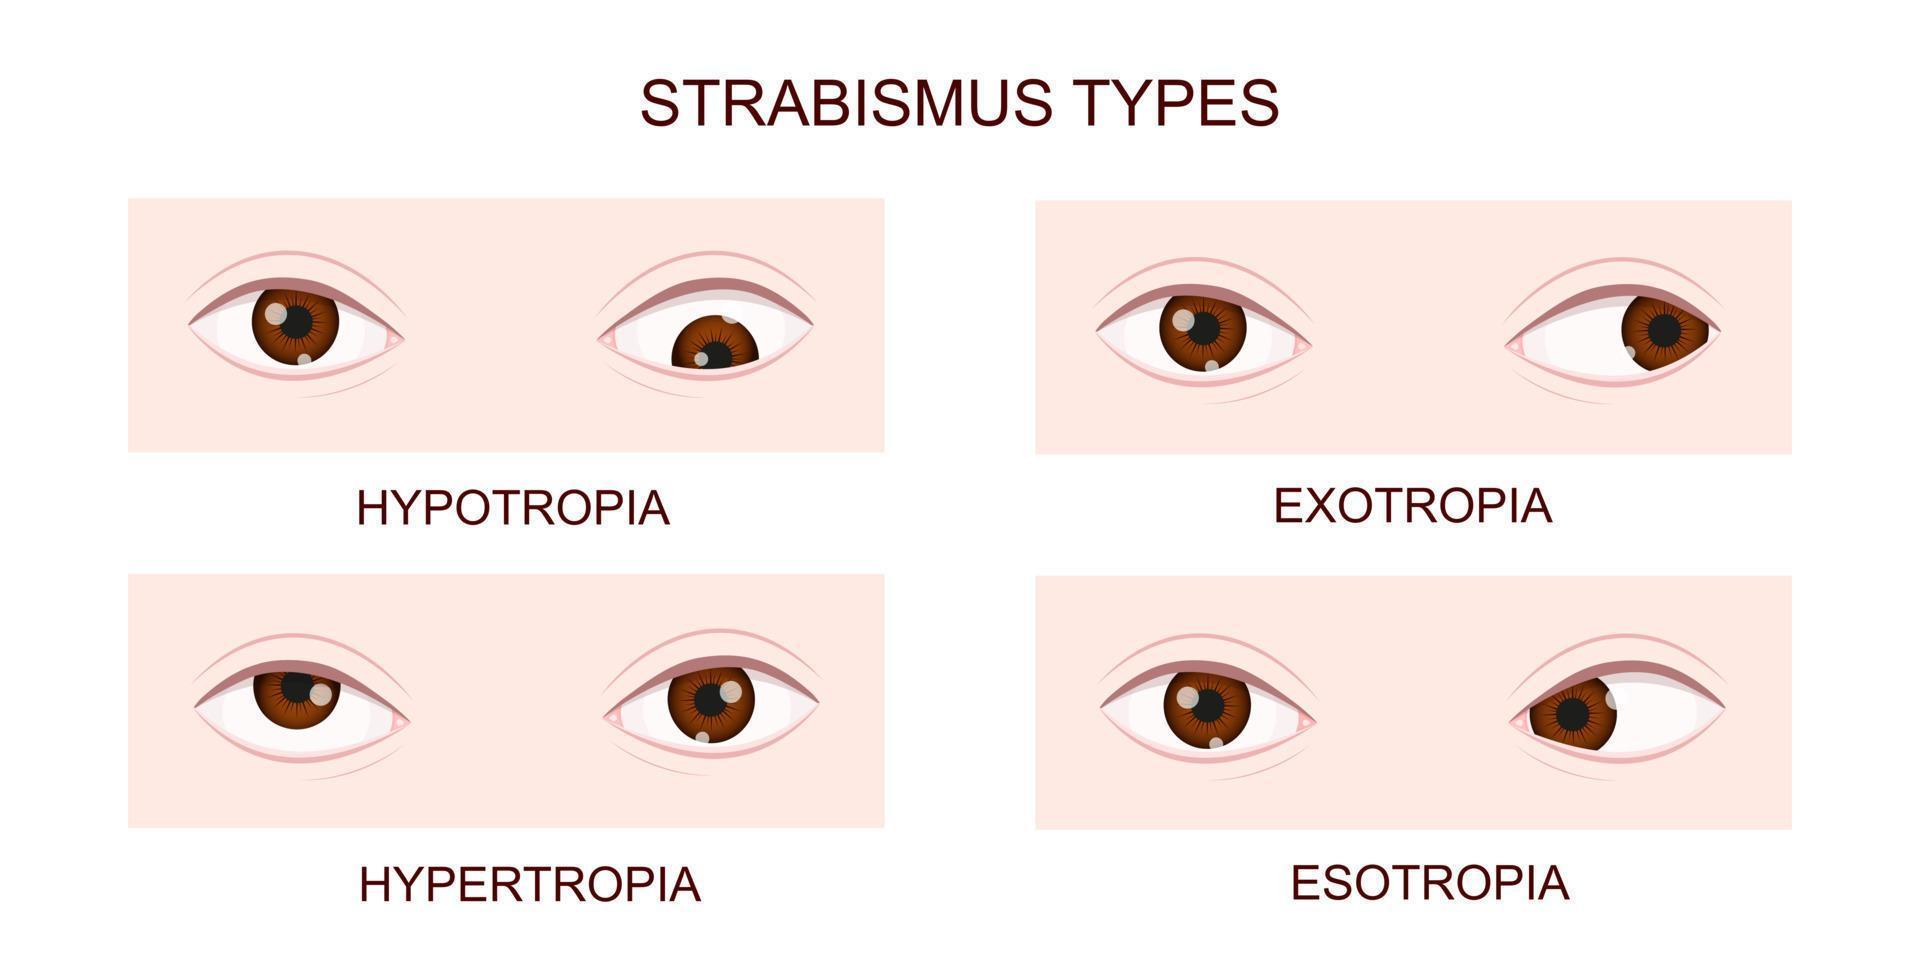 Strabismus-Typen. Hypotropie, Hypertropie, Exotropie, Esotropie. menschliche Augen mit verschiedenen Schielstörungen. Zustand mit gekreuzten Augen vektor